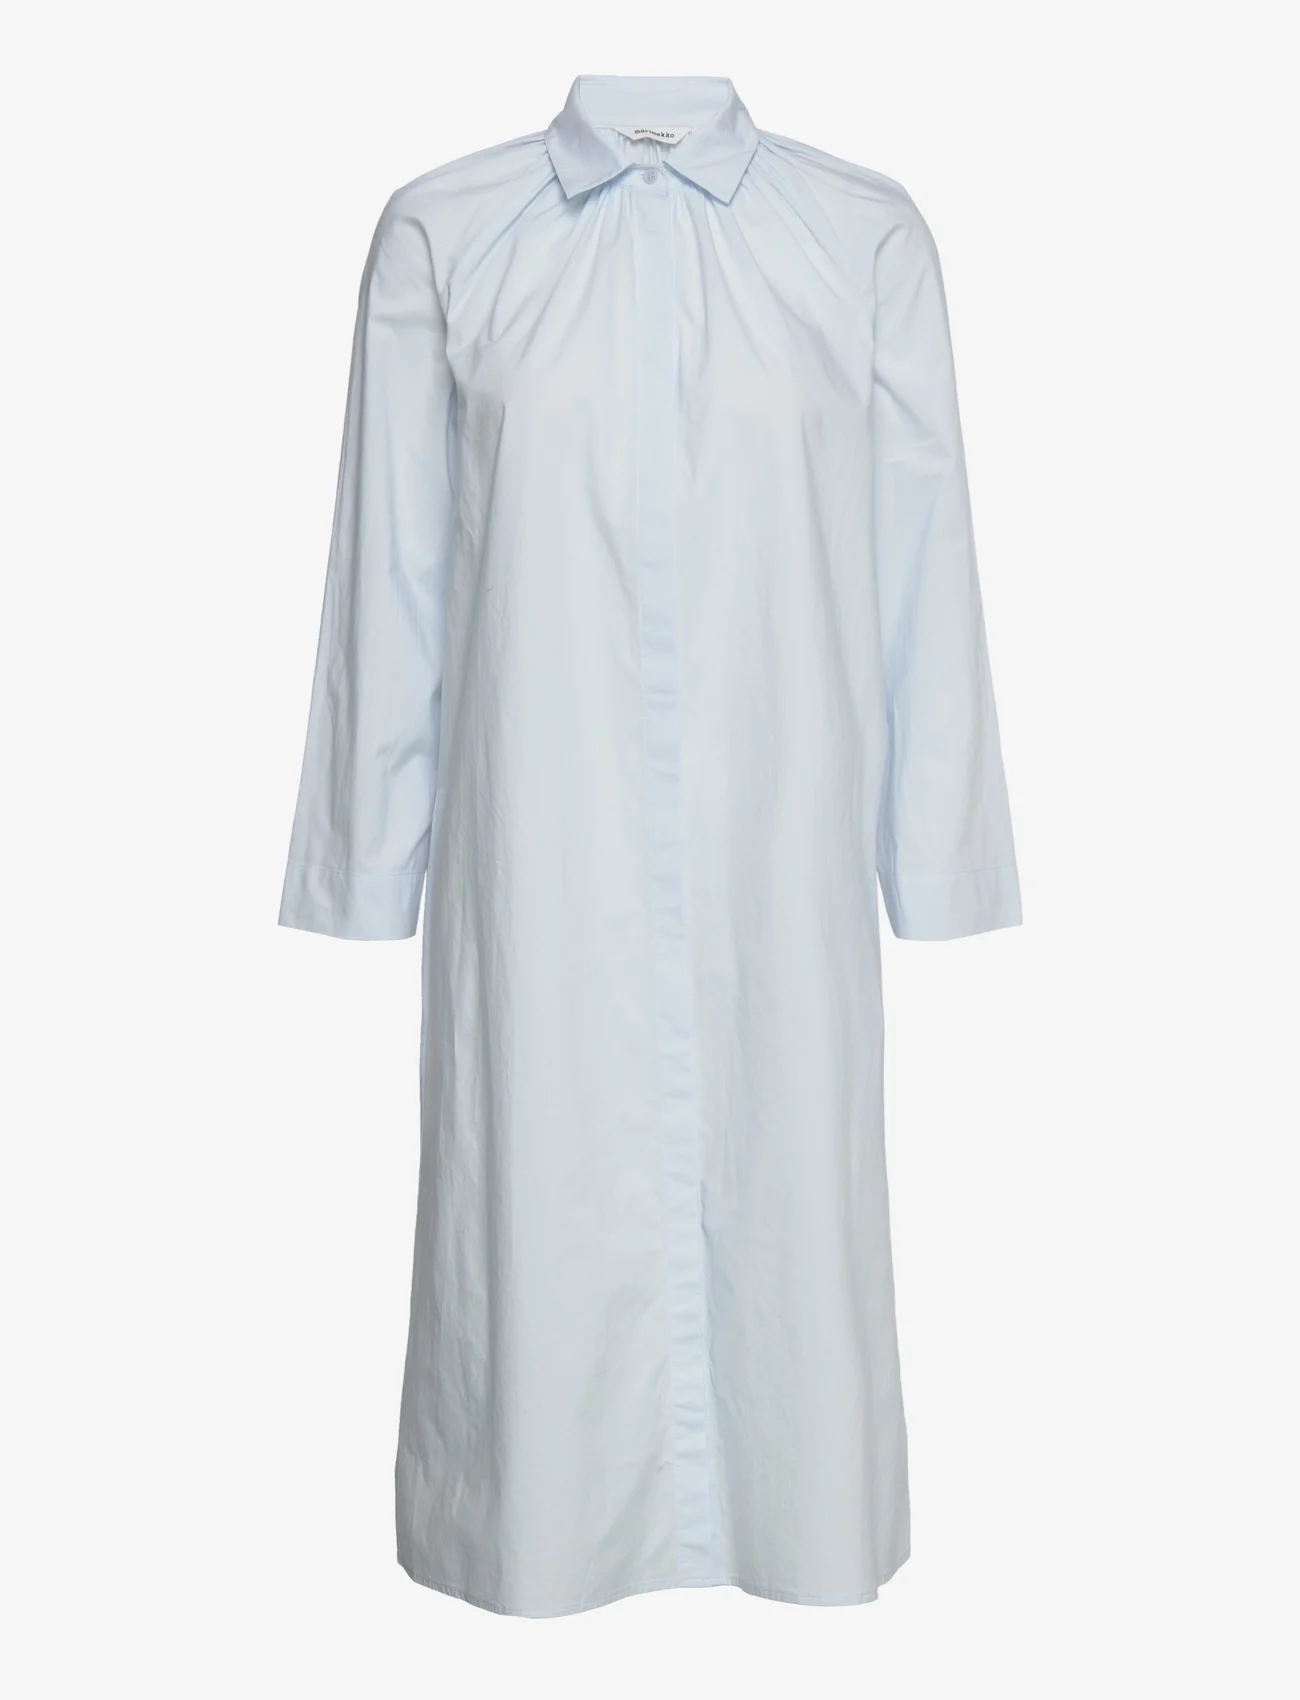 Marimekko - ILOLLE SOLID SHIRT DRESS - marškinių tipo suknelės - light blue - 0